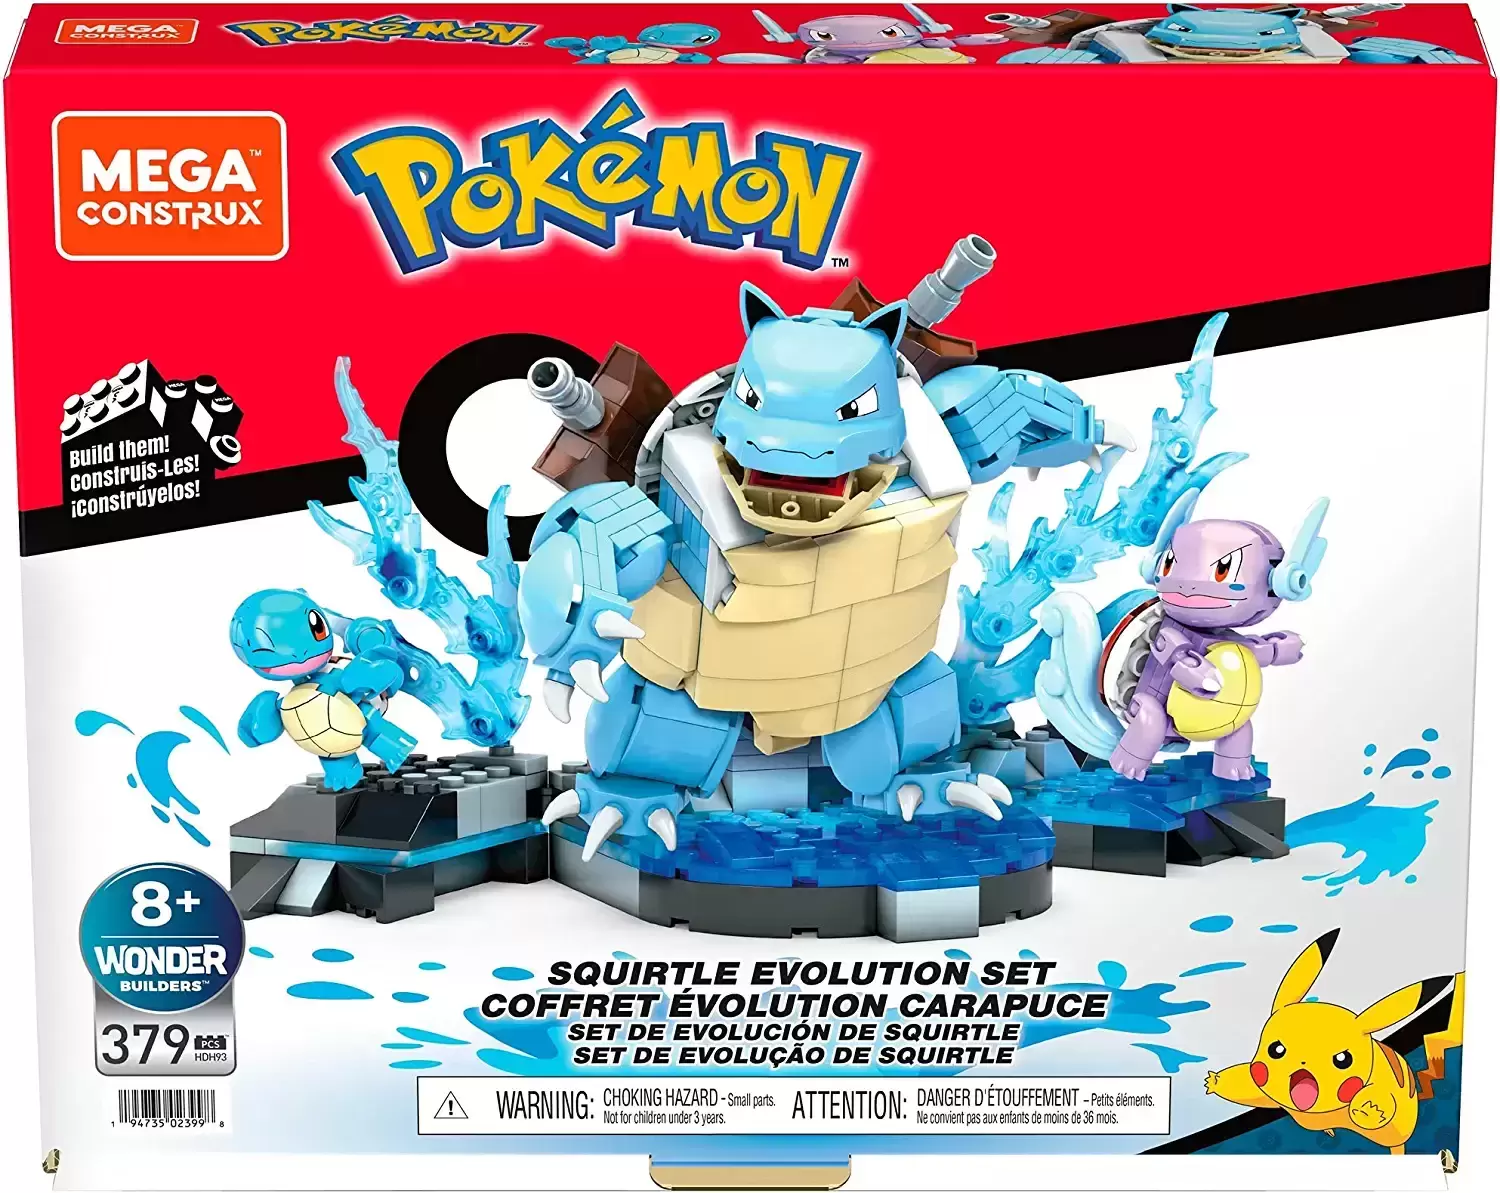 Pokémon Mega Construx - Squirtle Evolution Set